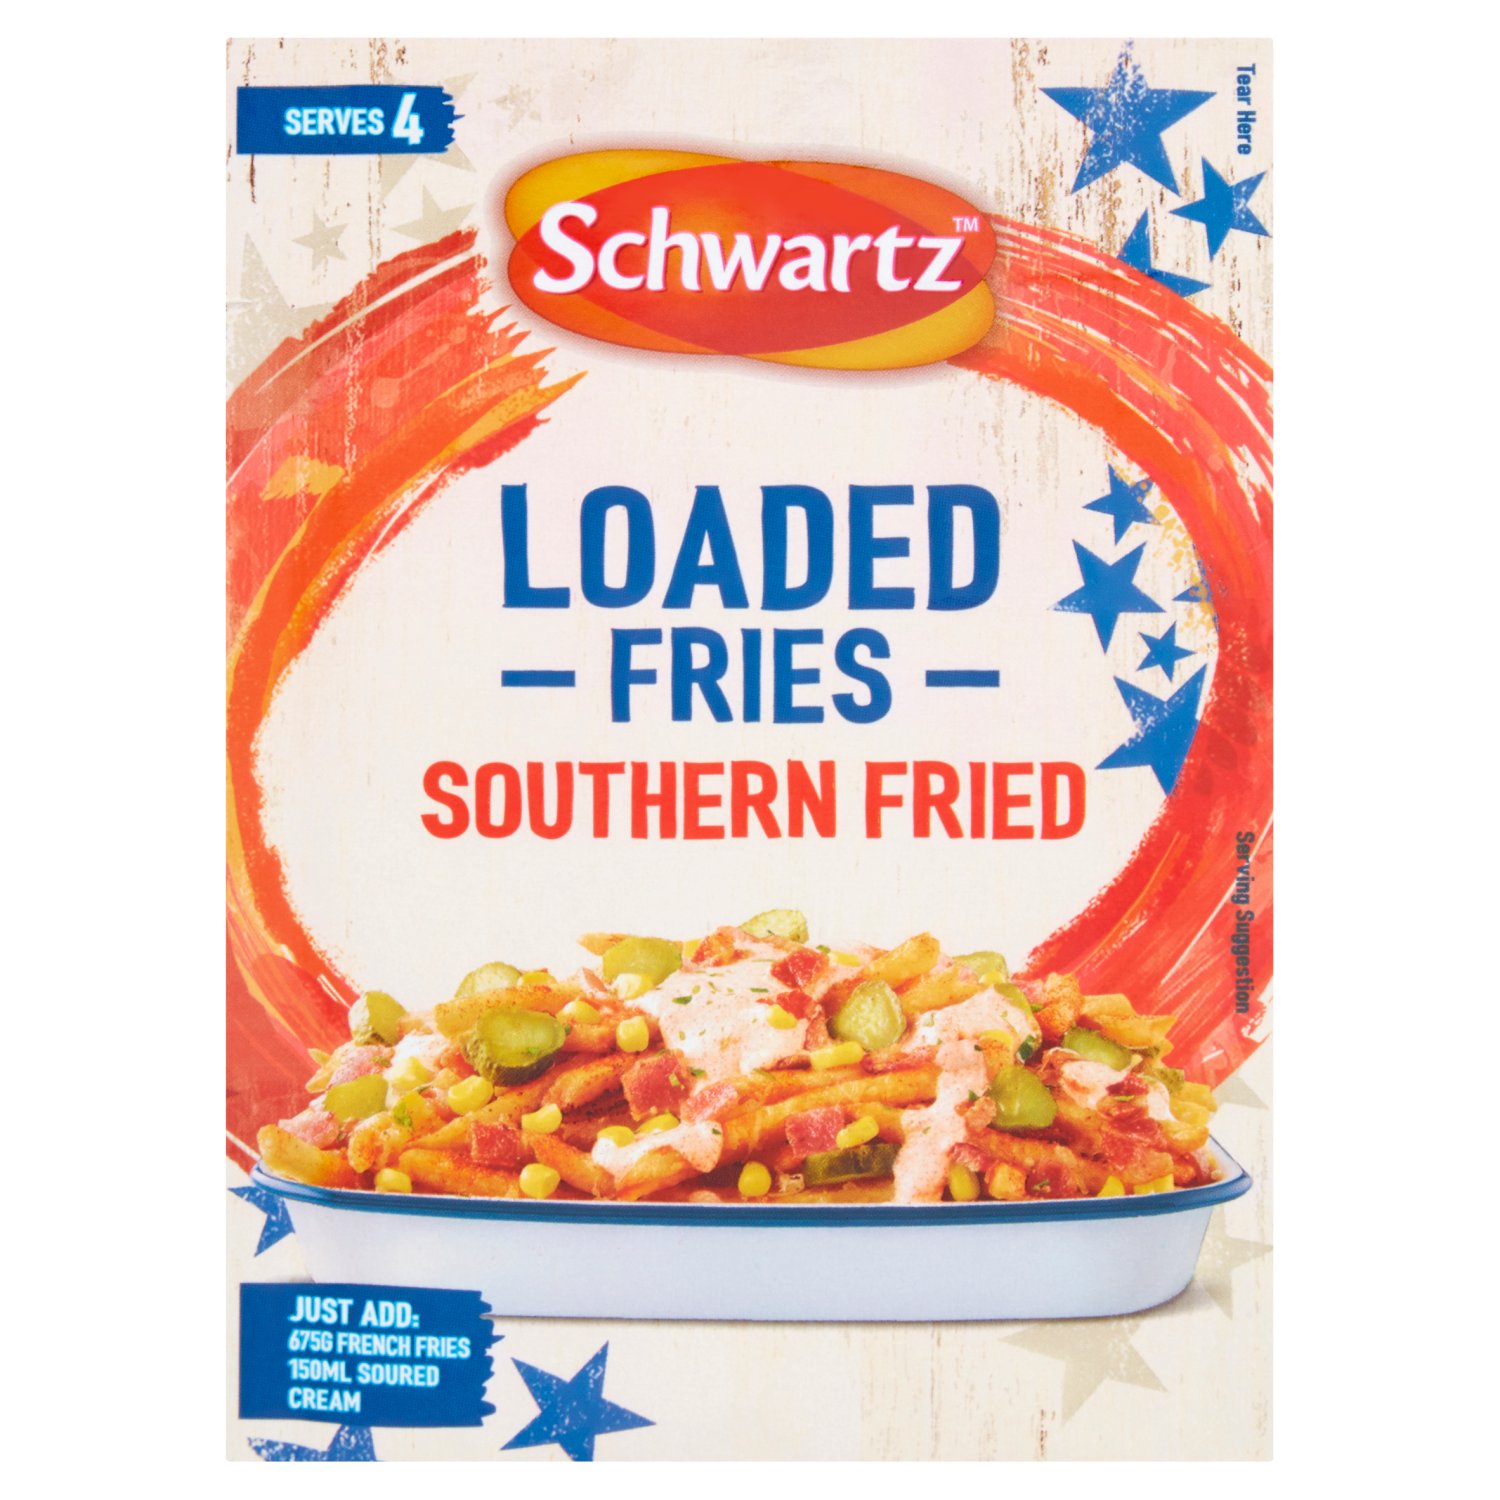 Schwartz Loaded Fries Southern Fried (20 g)